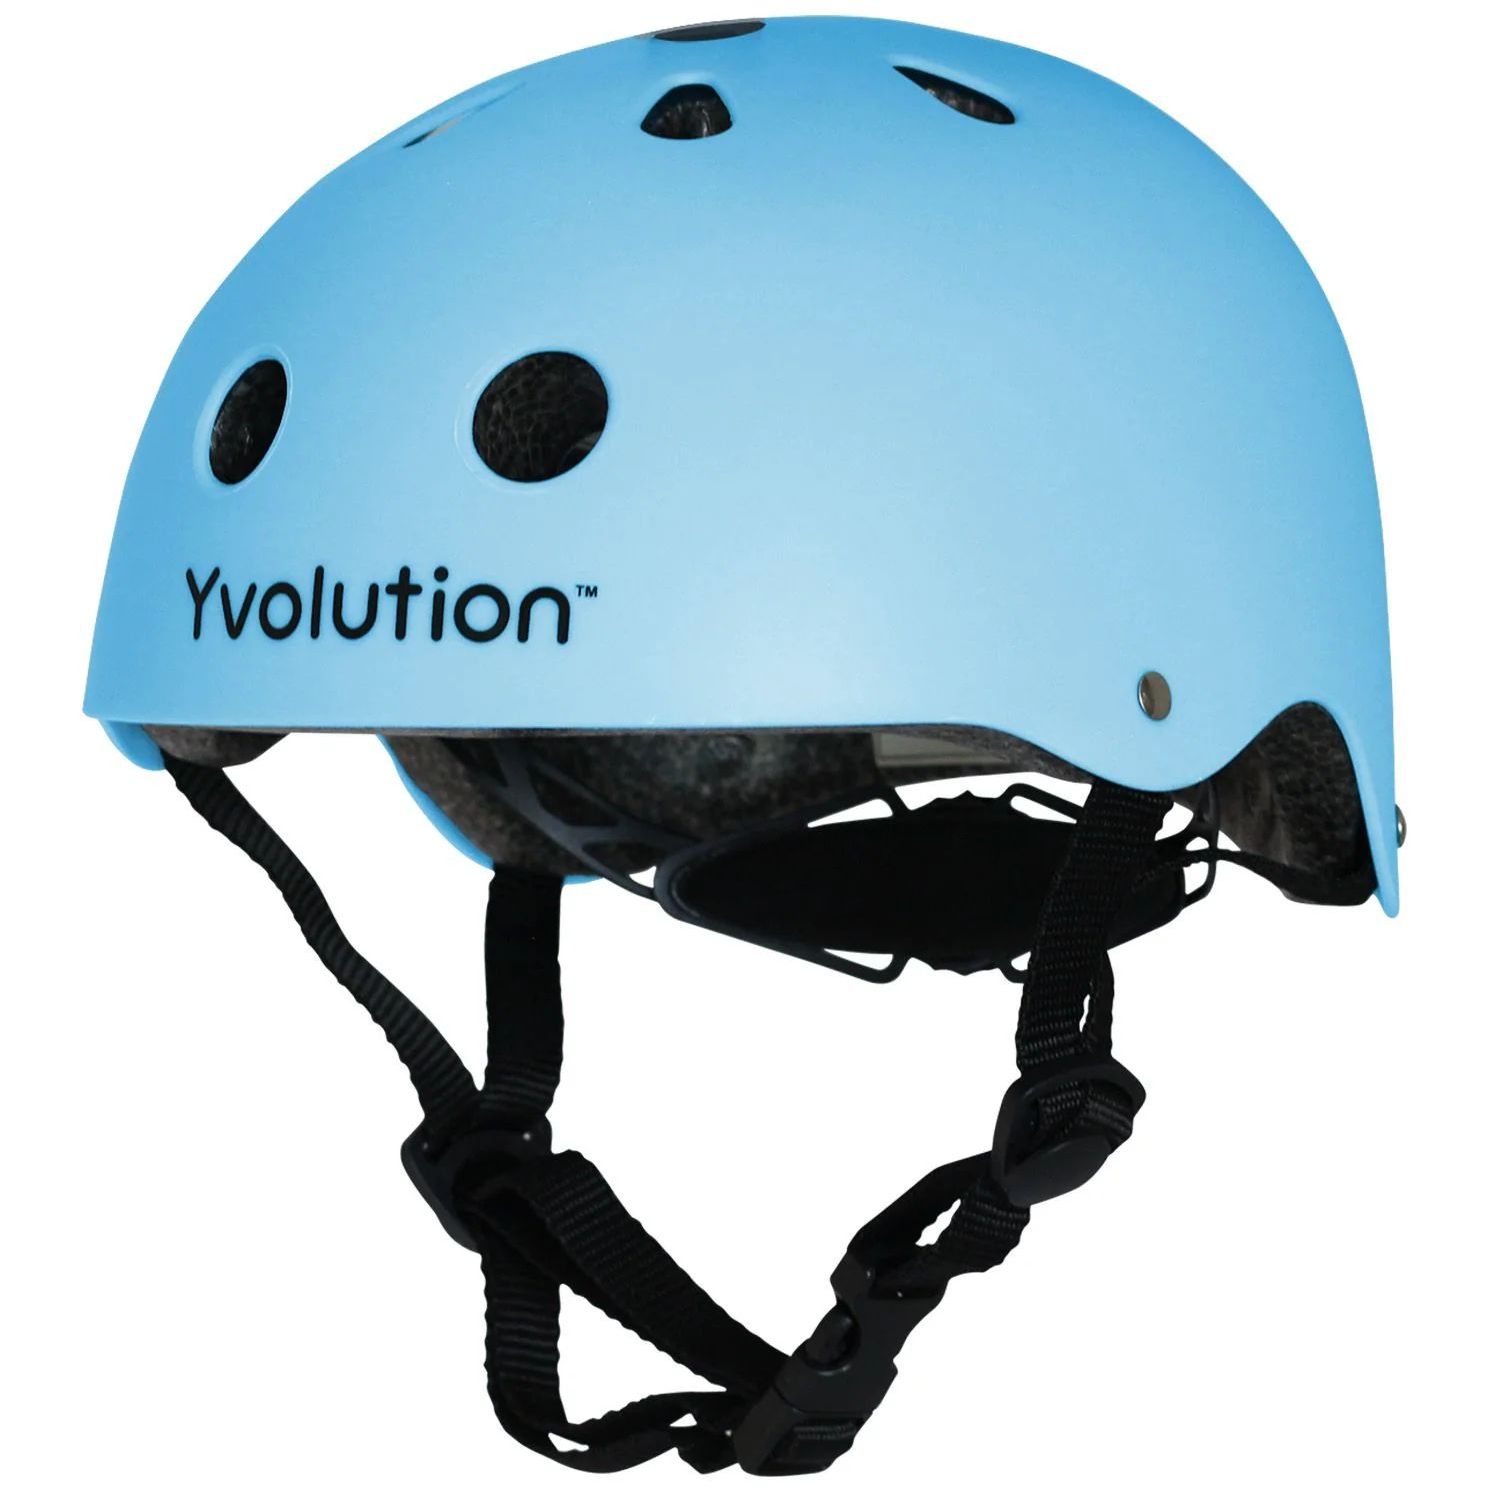 Защитный шлем Yvolution, S (44-52 см), голубой (YA21B9) - фото 1